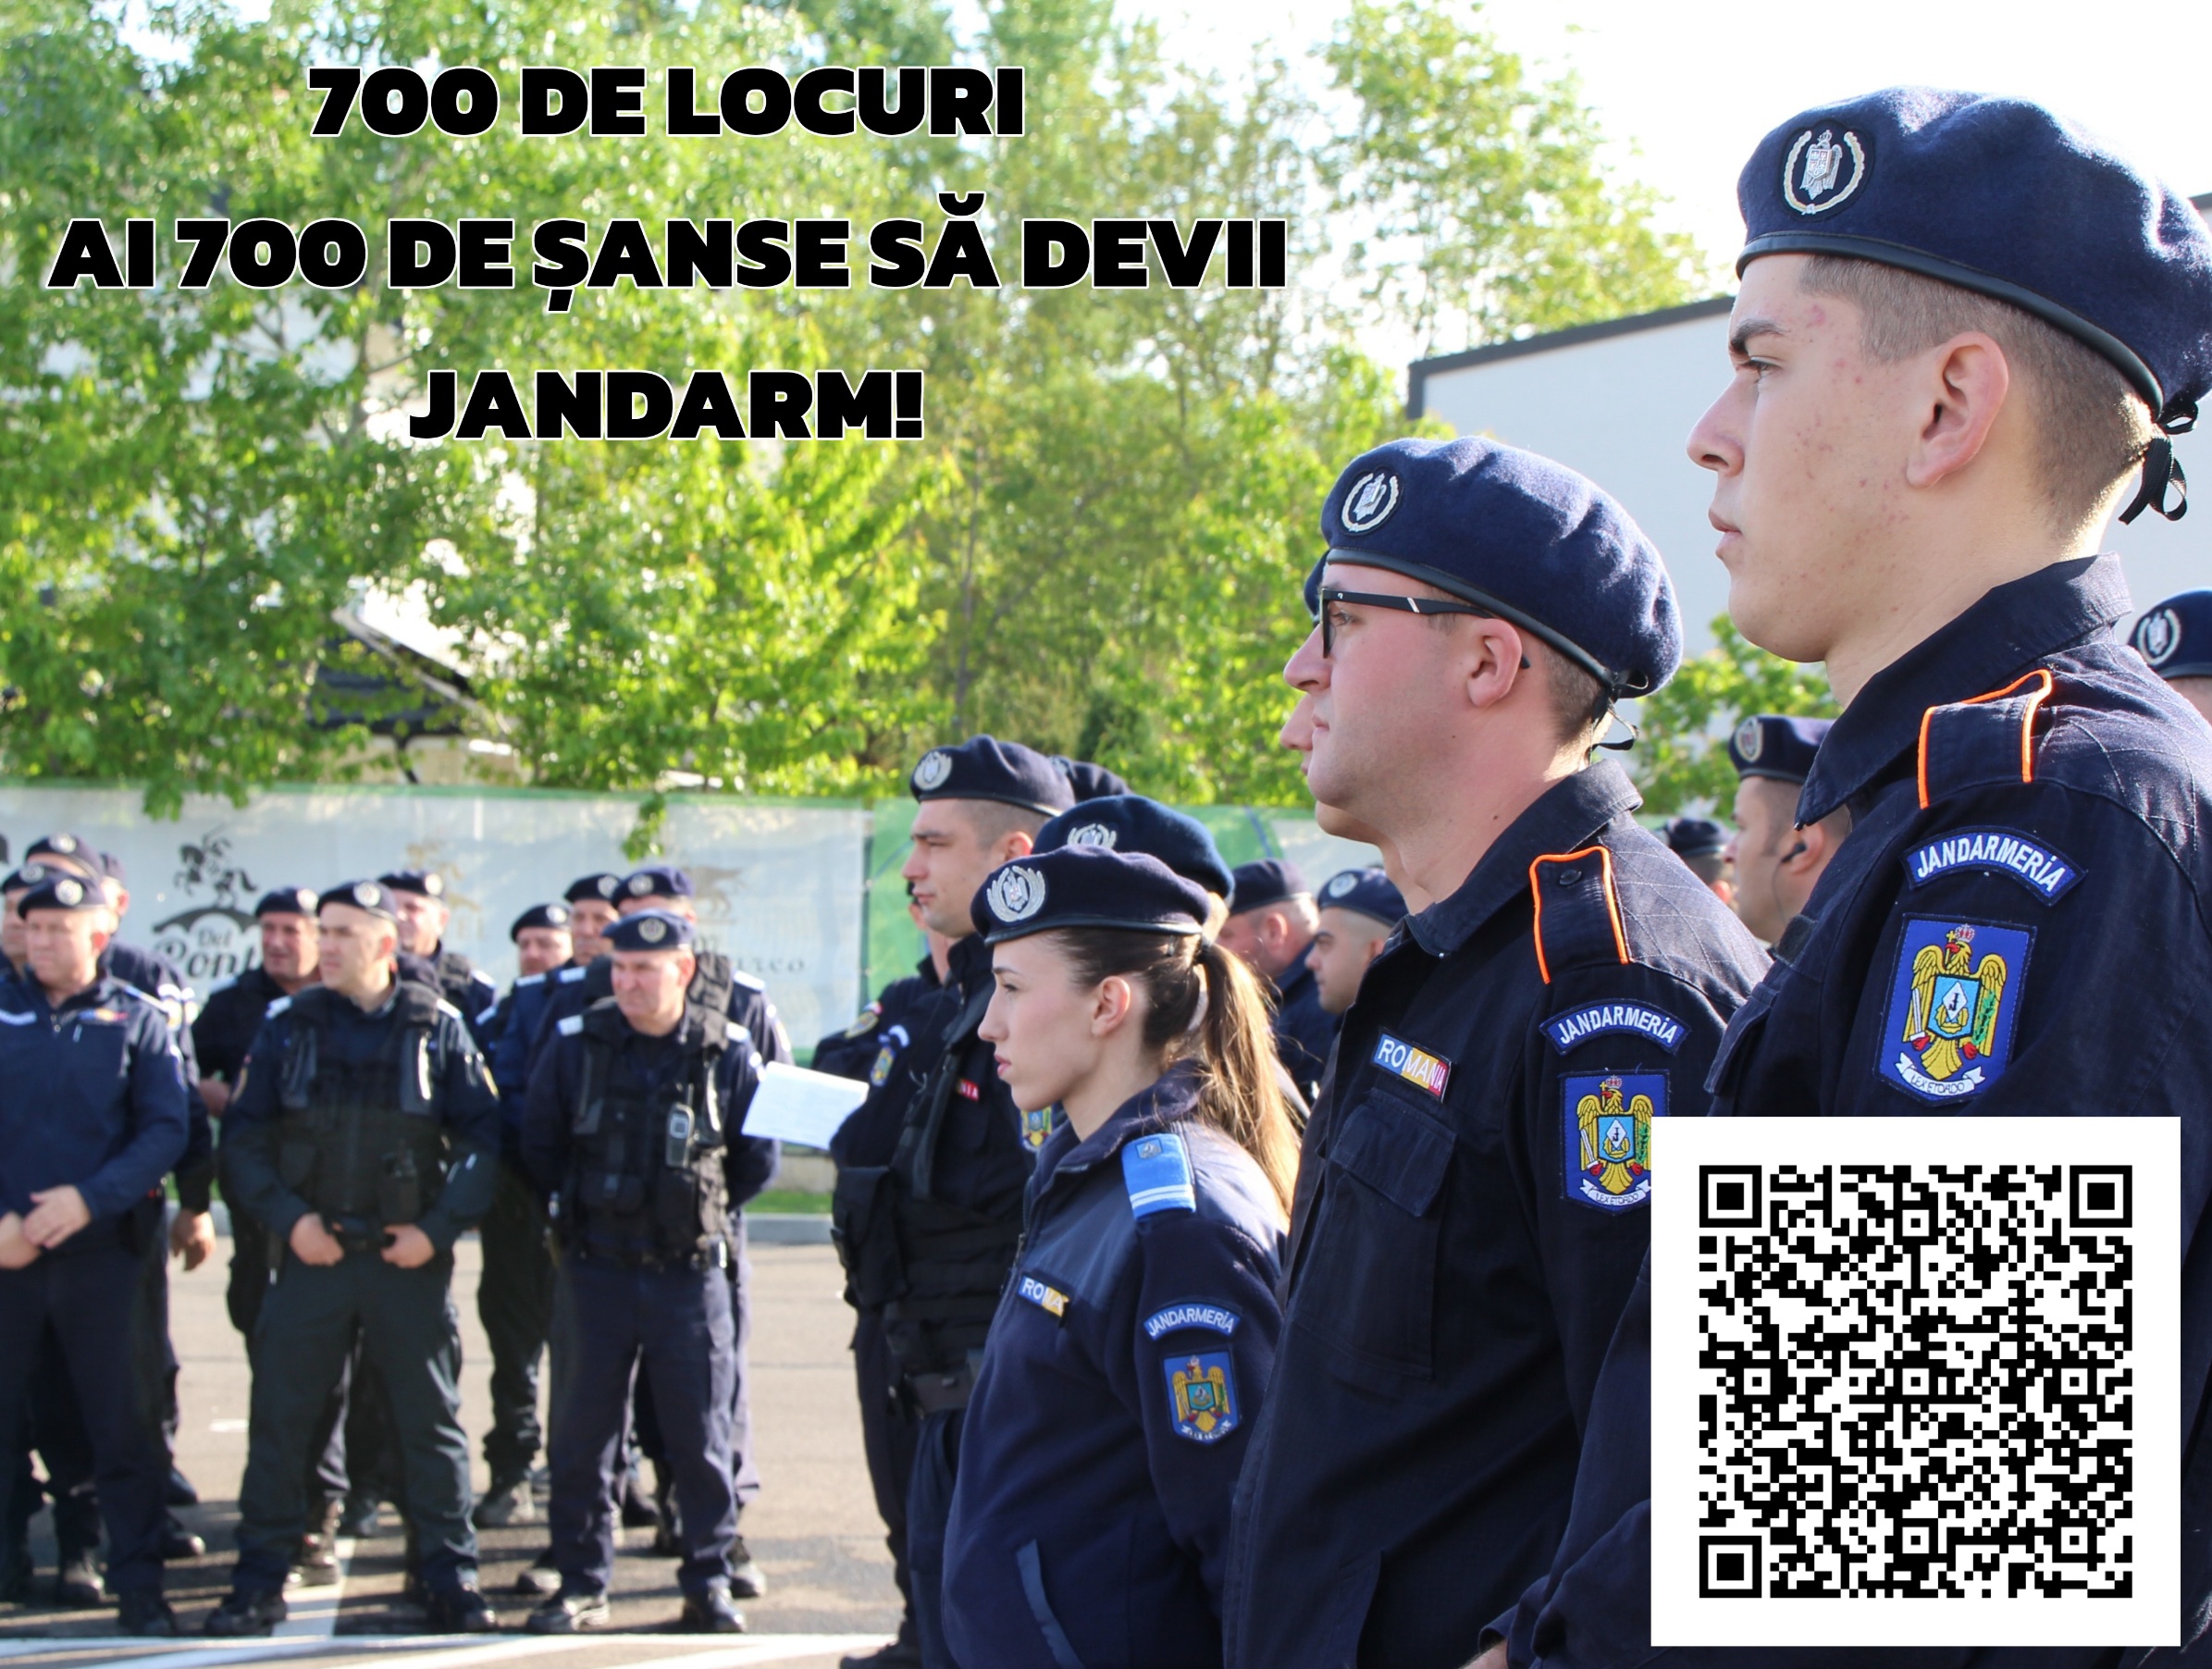 700 de locuri – au mai rămas 6 zile până la încheierea perioadei de înscriere în vederea admiterii la școlile postliceale ale Jandarmeriei Române! Ai 700 de șanse să devii jandarm!